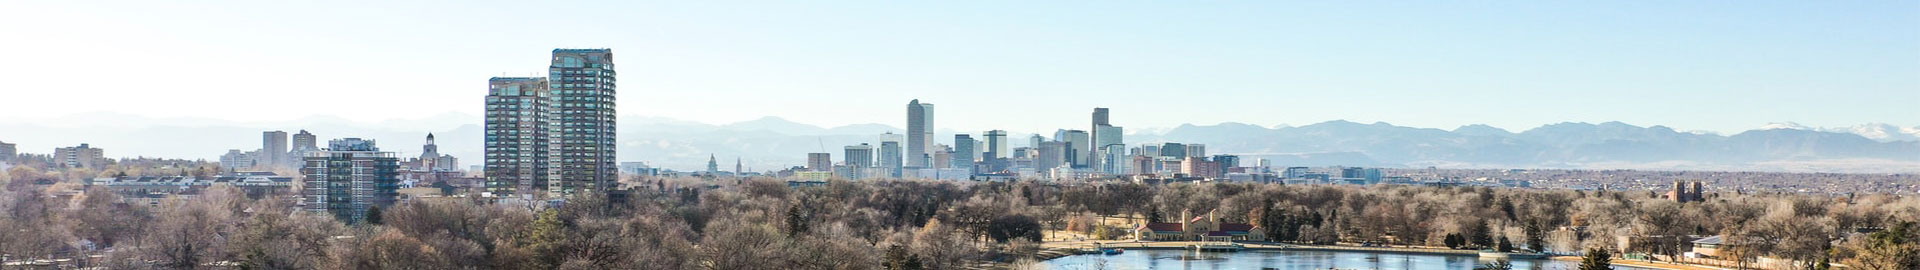 vista del horizonte del parque de Denver Colorado